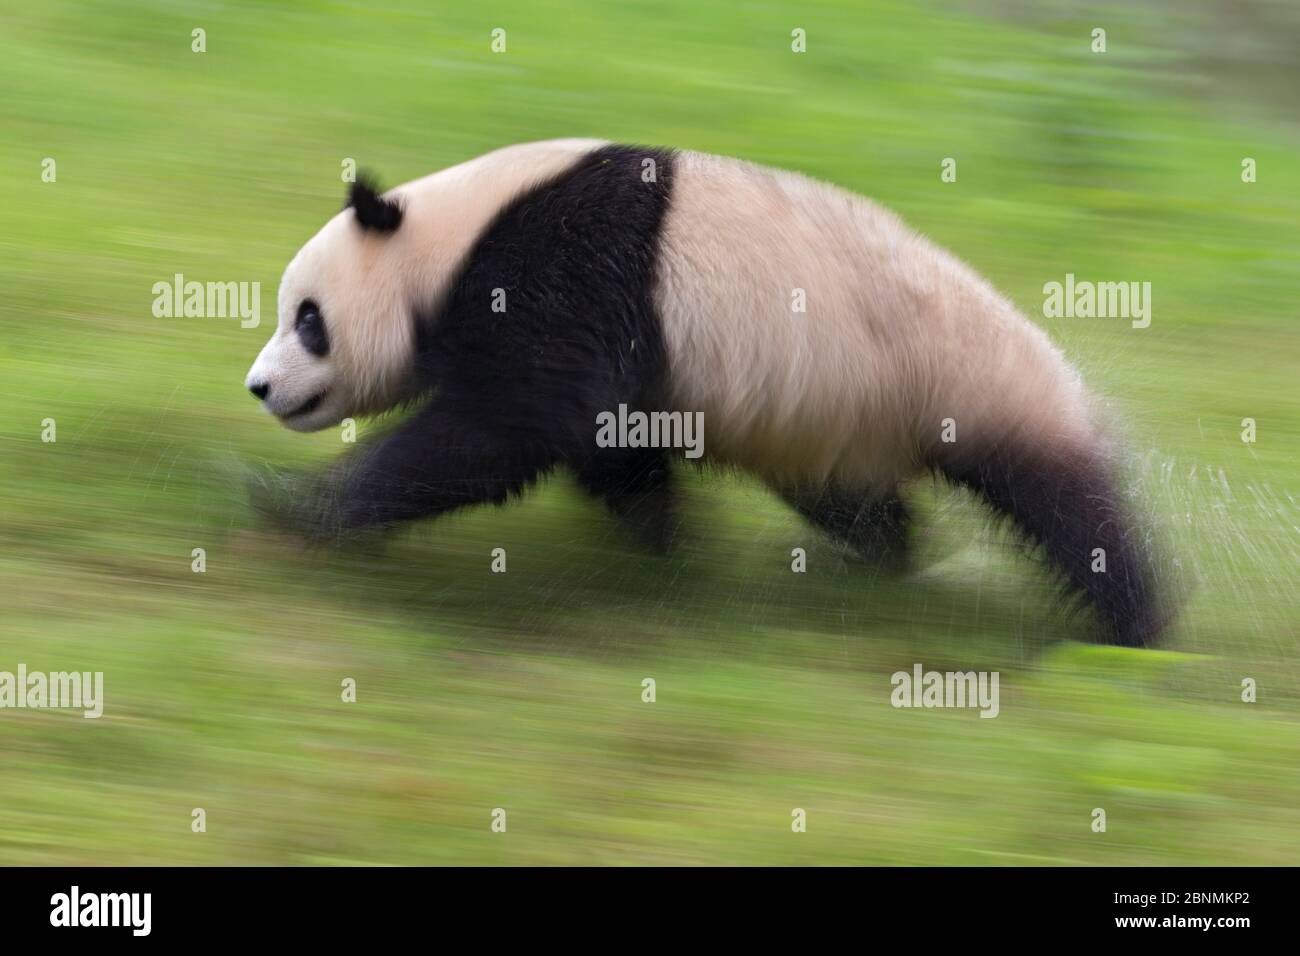 Panda géant (Ailuropoda melanoleuca) en cours d'exécution, captive, Chine Banque D'Images